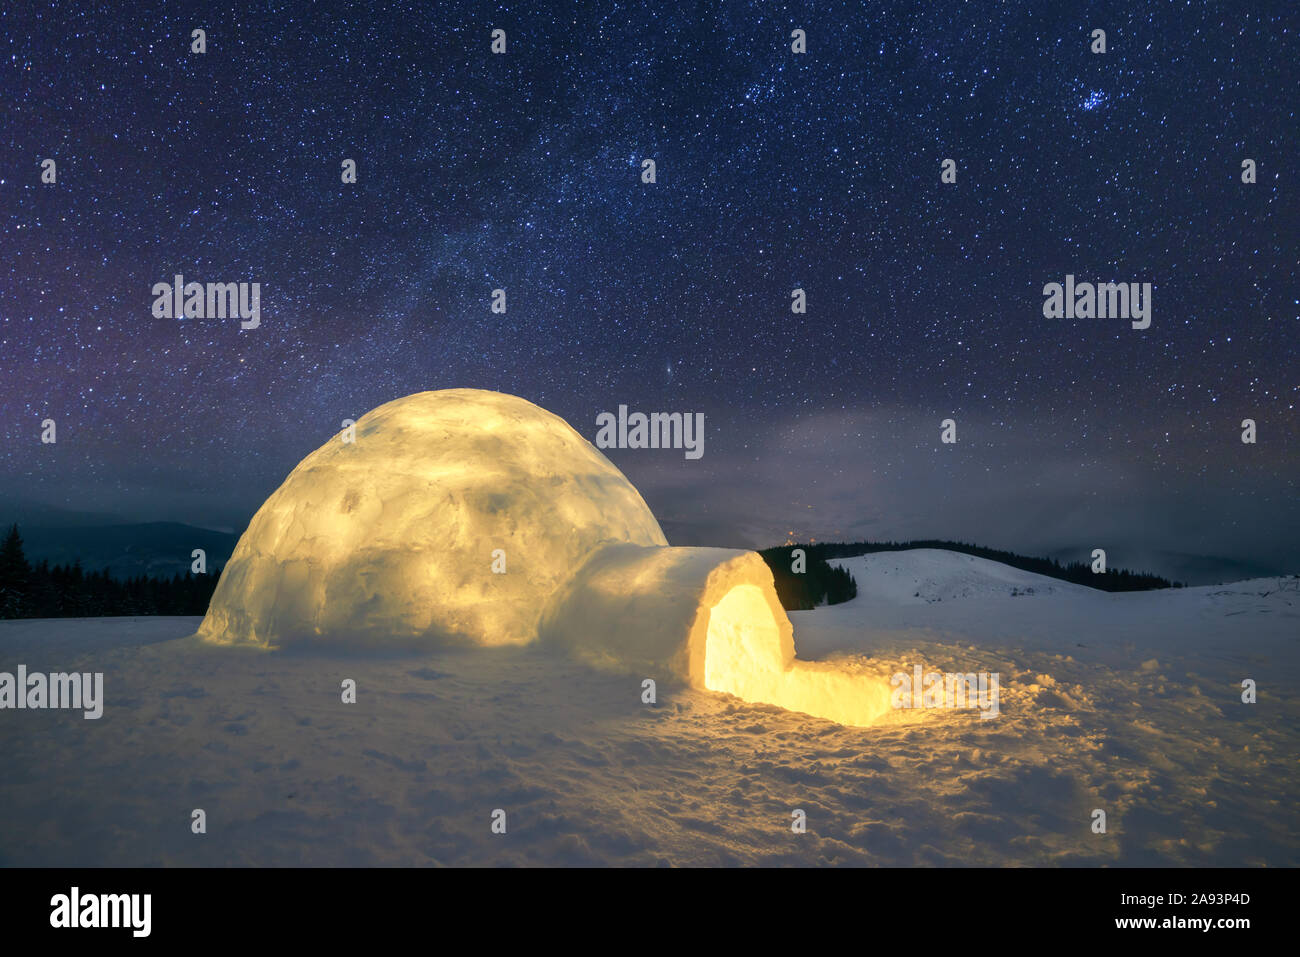 Fantastico paesaggio invernale incandescente da star light. Scena invernale con snowy igloo e la via lattea nel cielo notturno Foto Stock